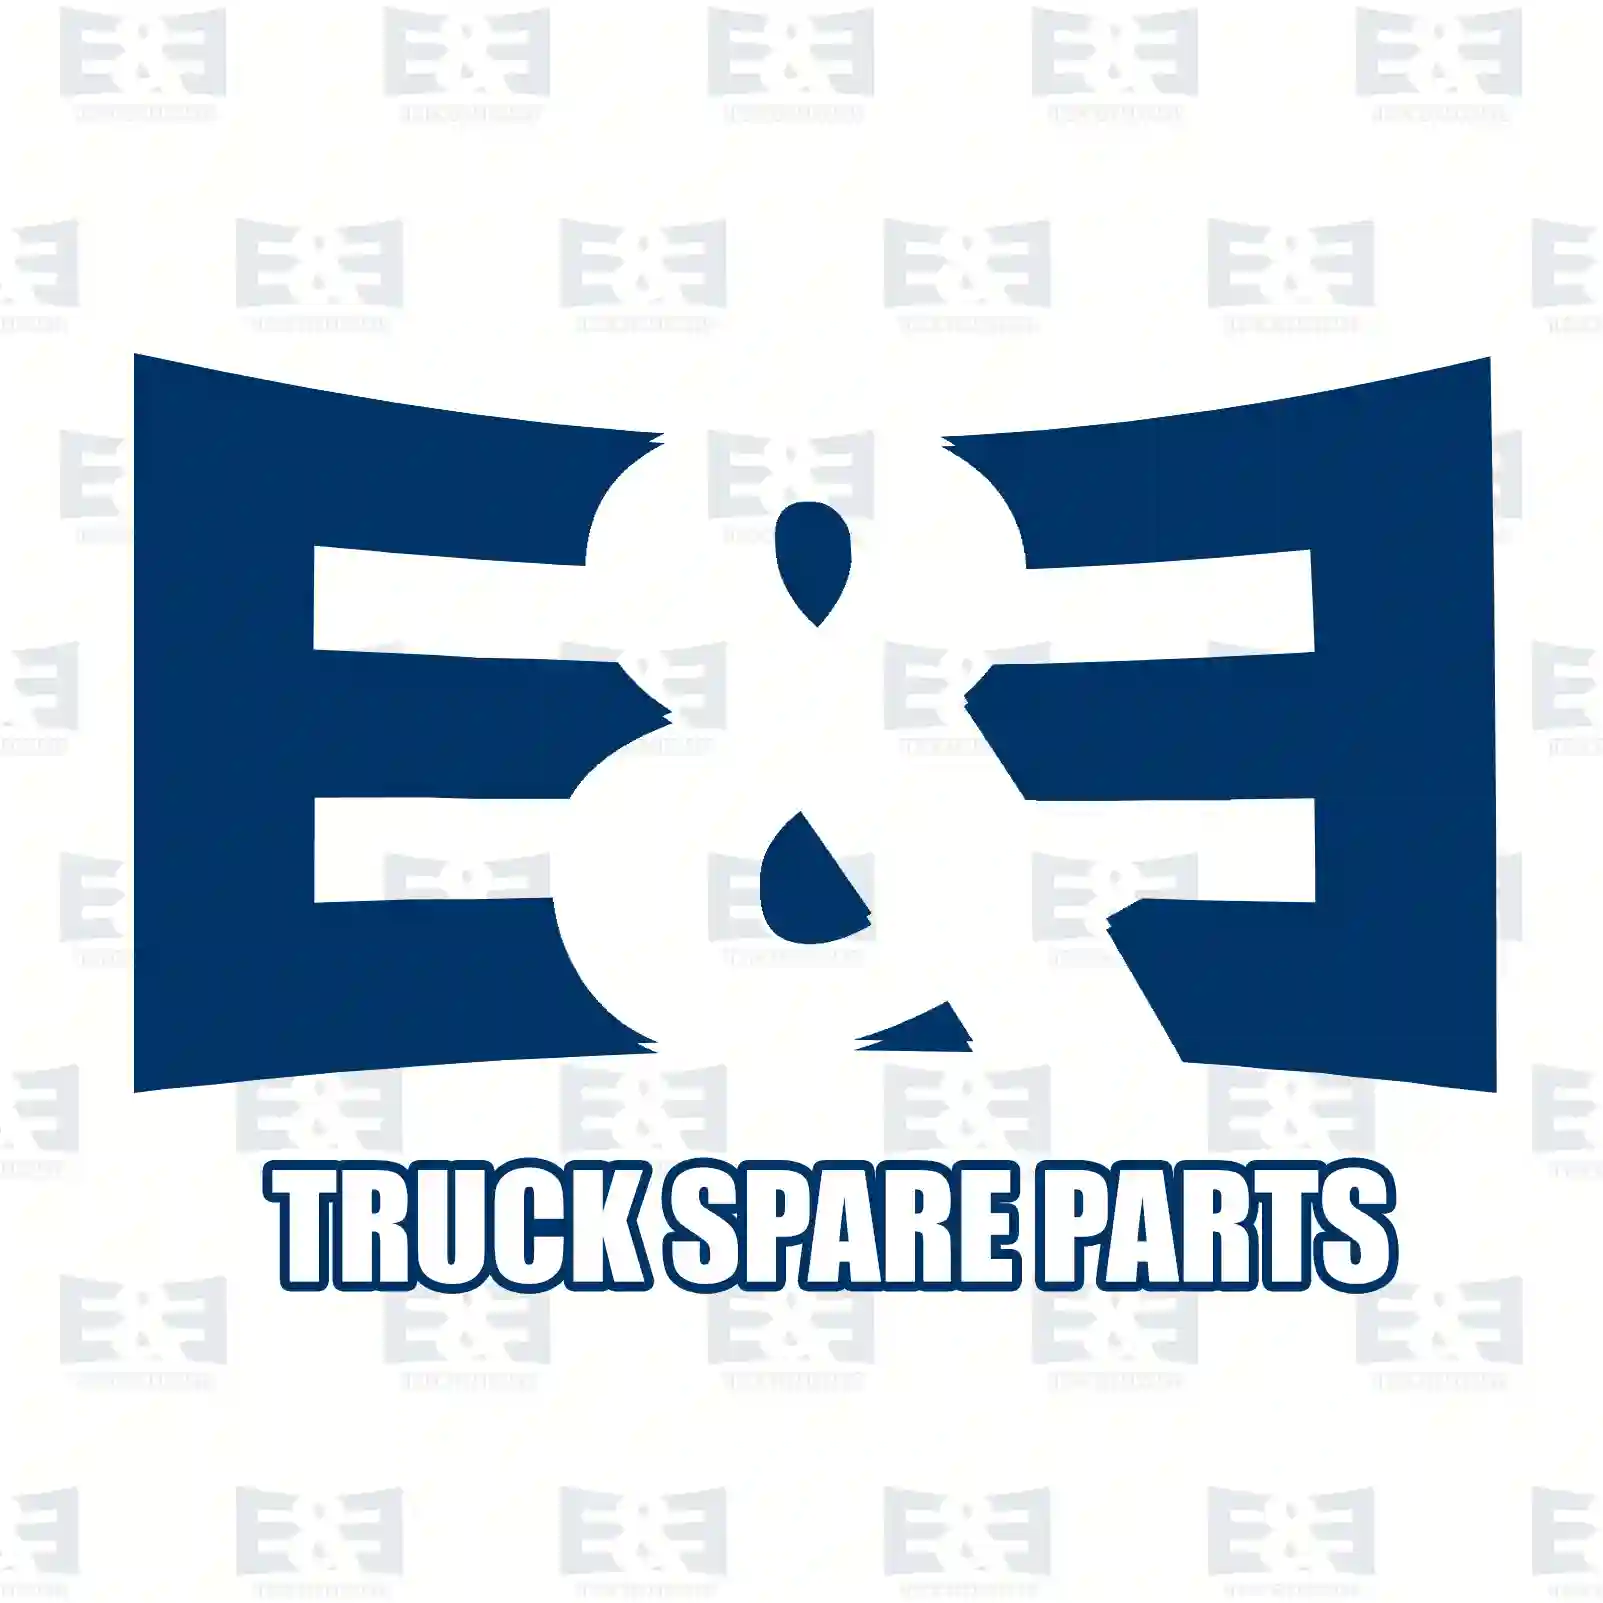  Double check valve || E&E Truck Spare Parts | Truck Spare Parts, Auotomotive Spare Parts